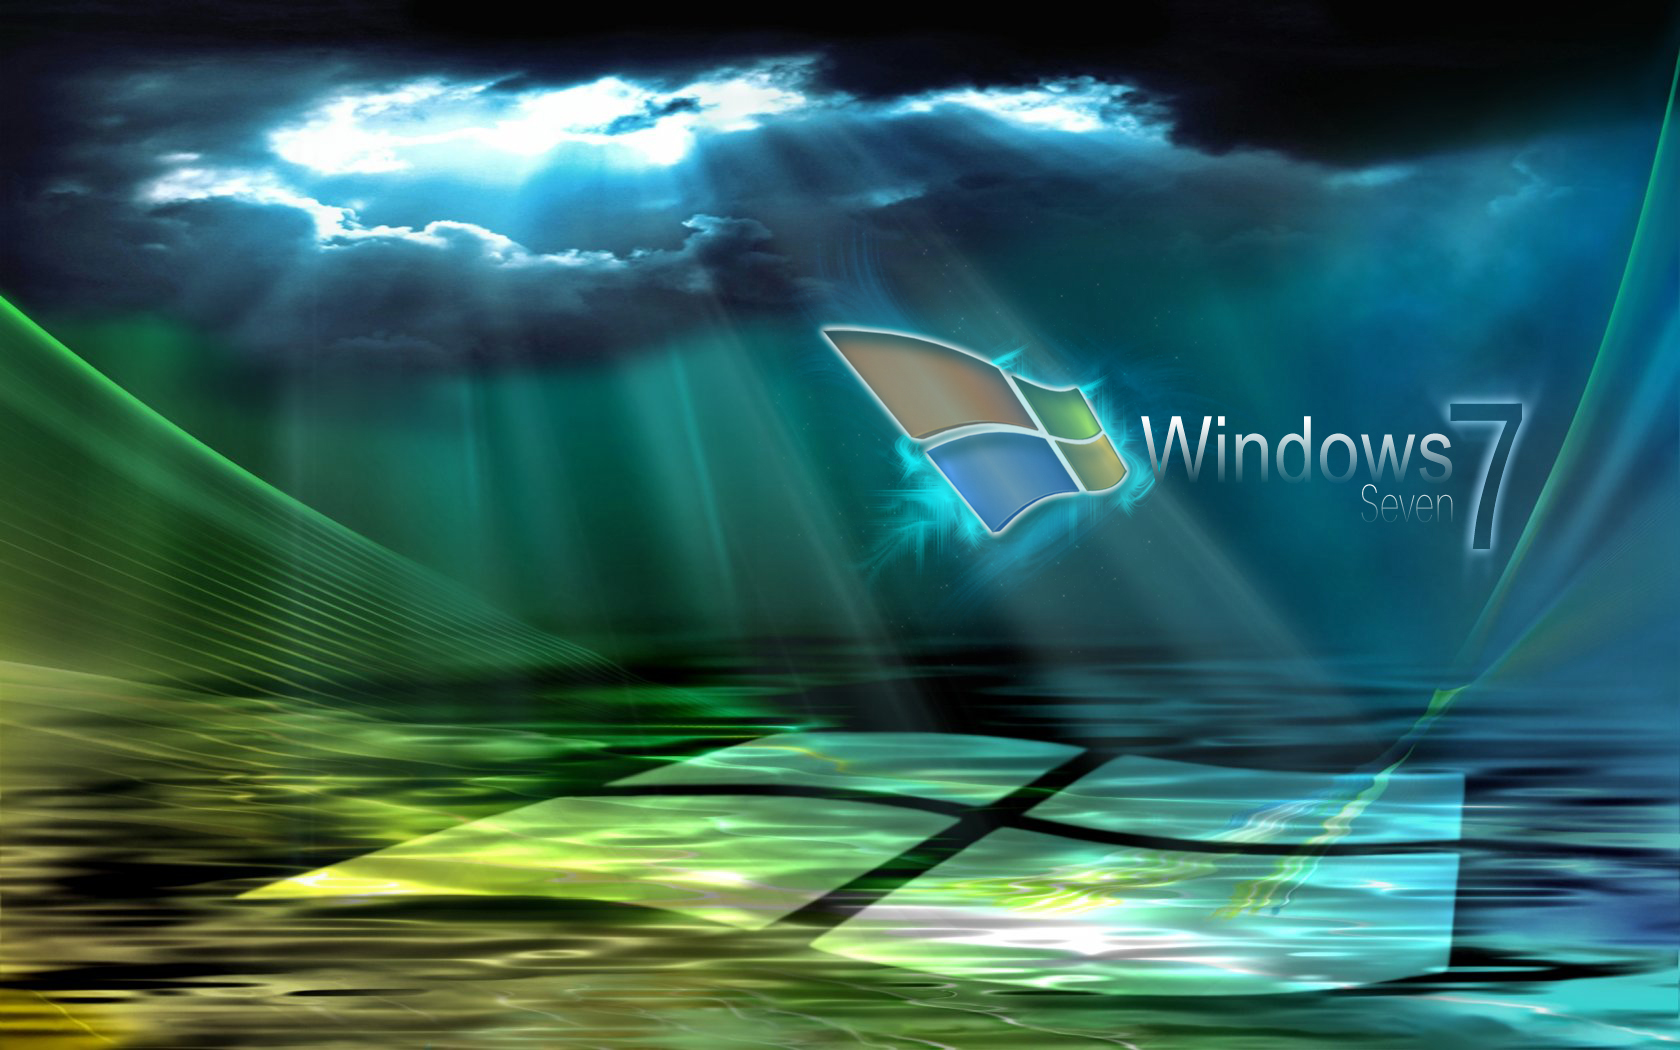 Description Windows 7 HD Wallpaper is a hi res Wallpaper for pc